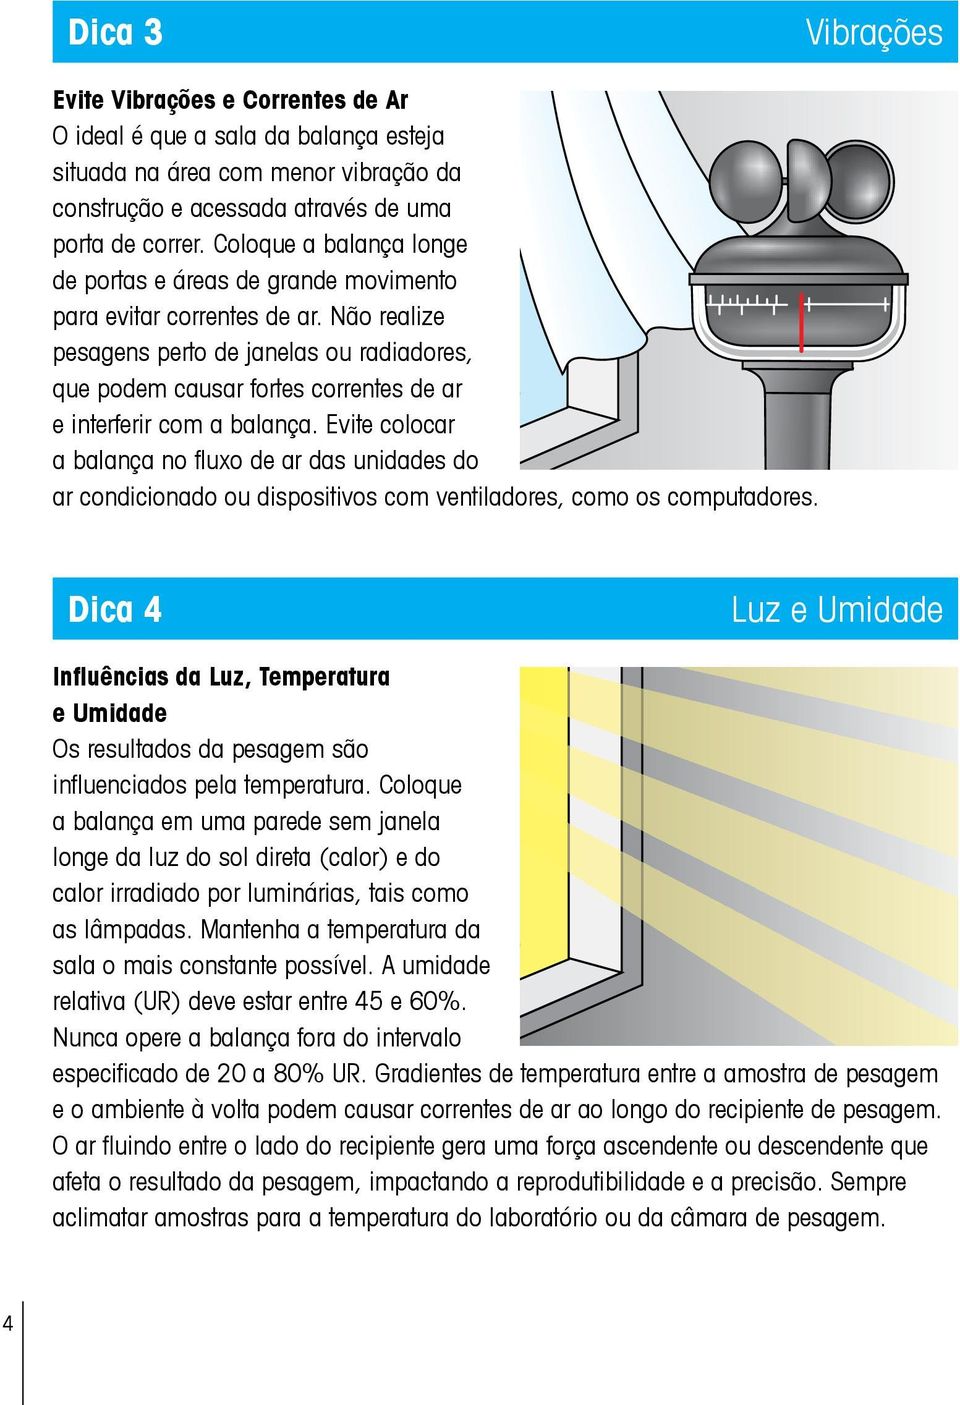 Não realize pesagens perto de janelas ou radiadores, que podem causar fortes correntes de ar e interferir com a balança.